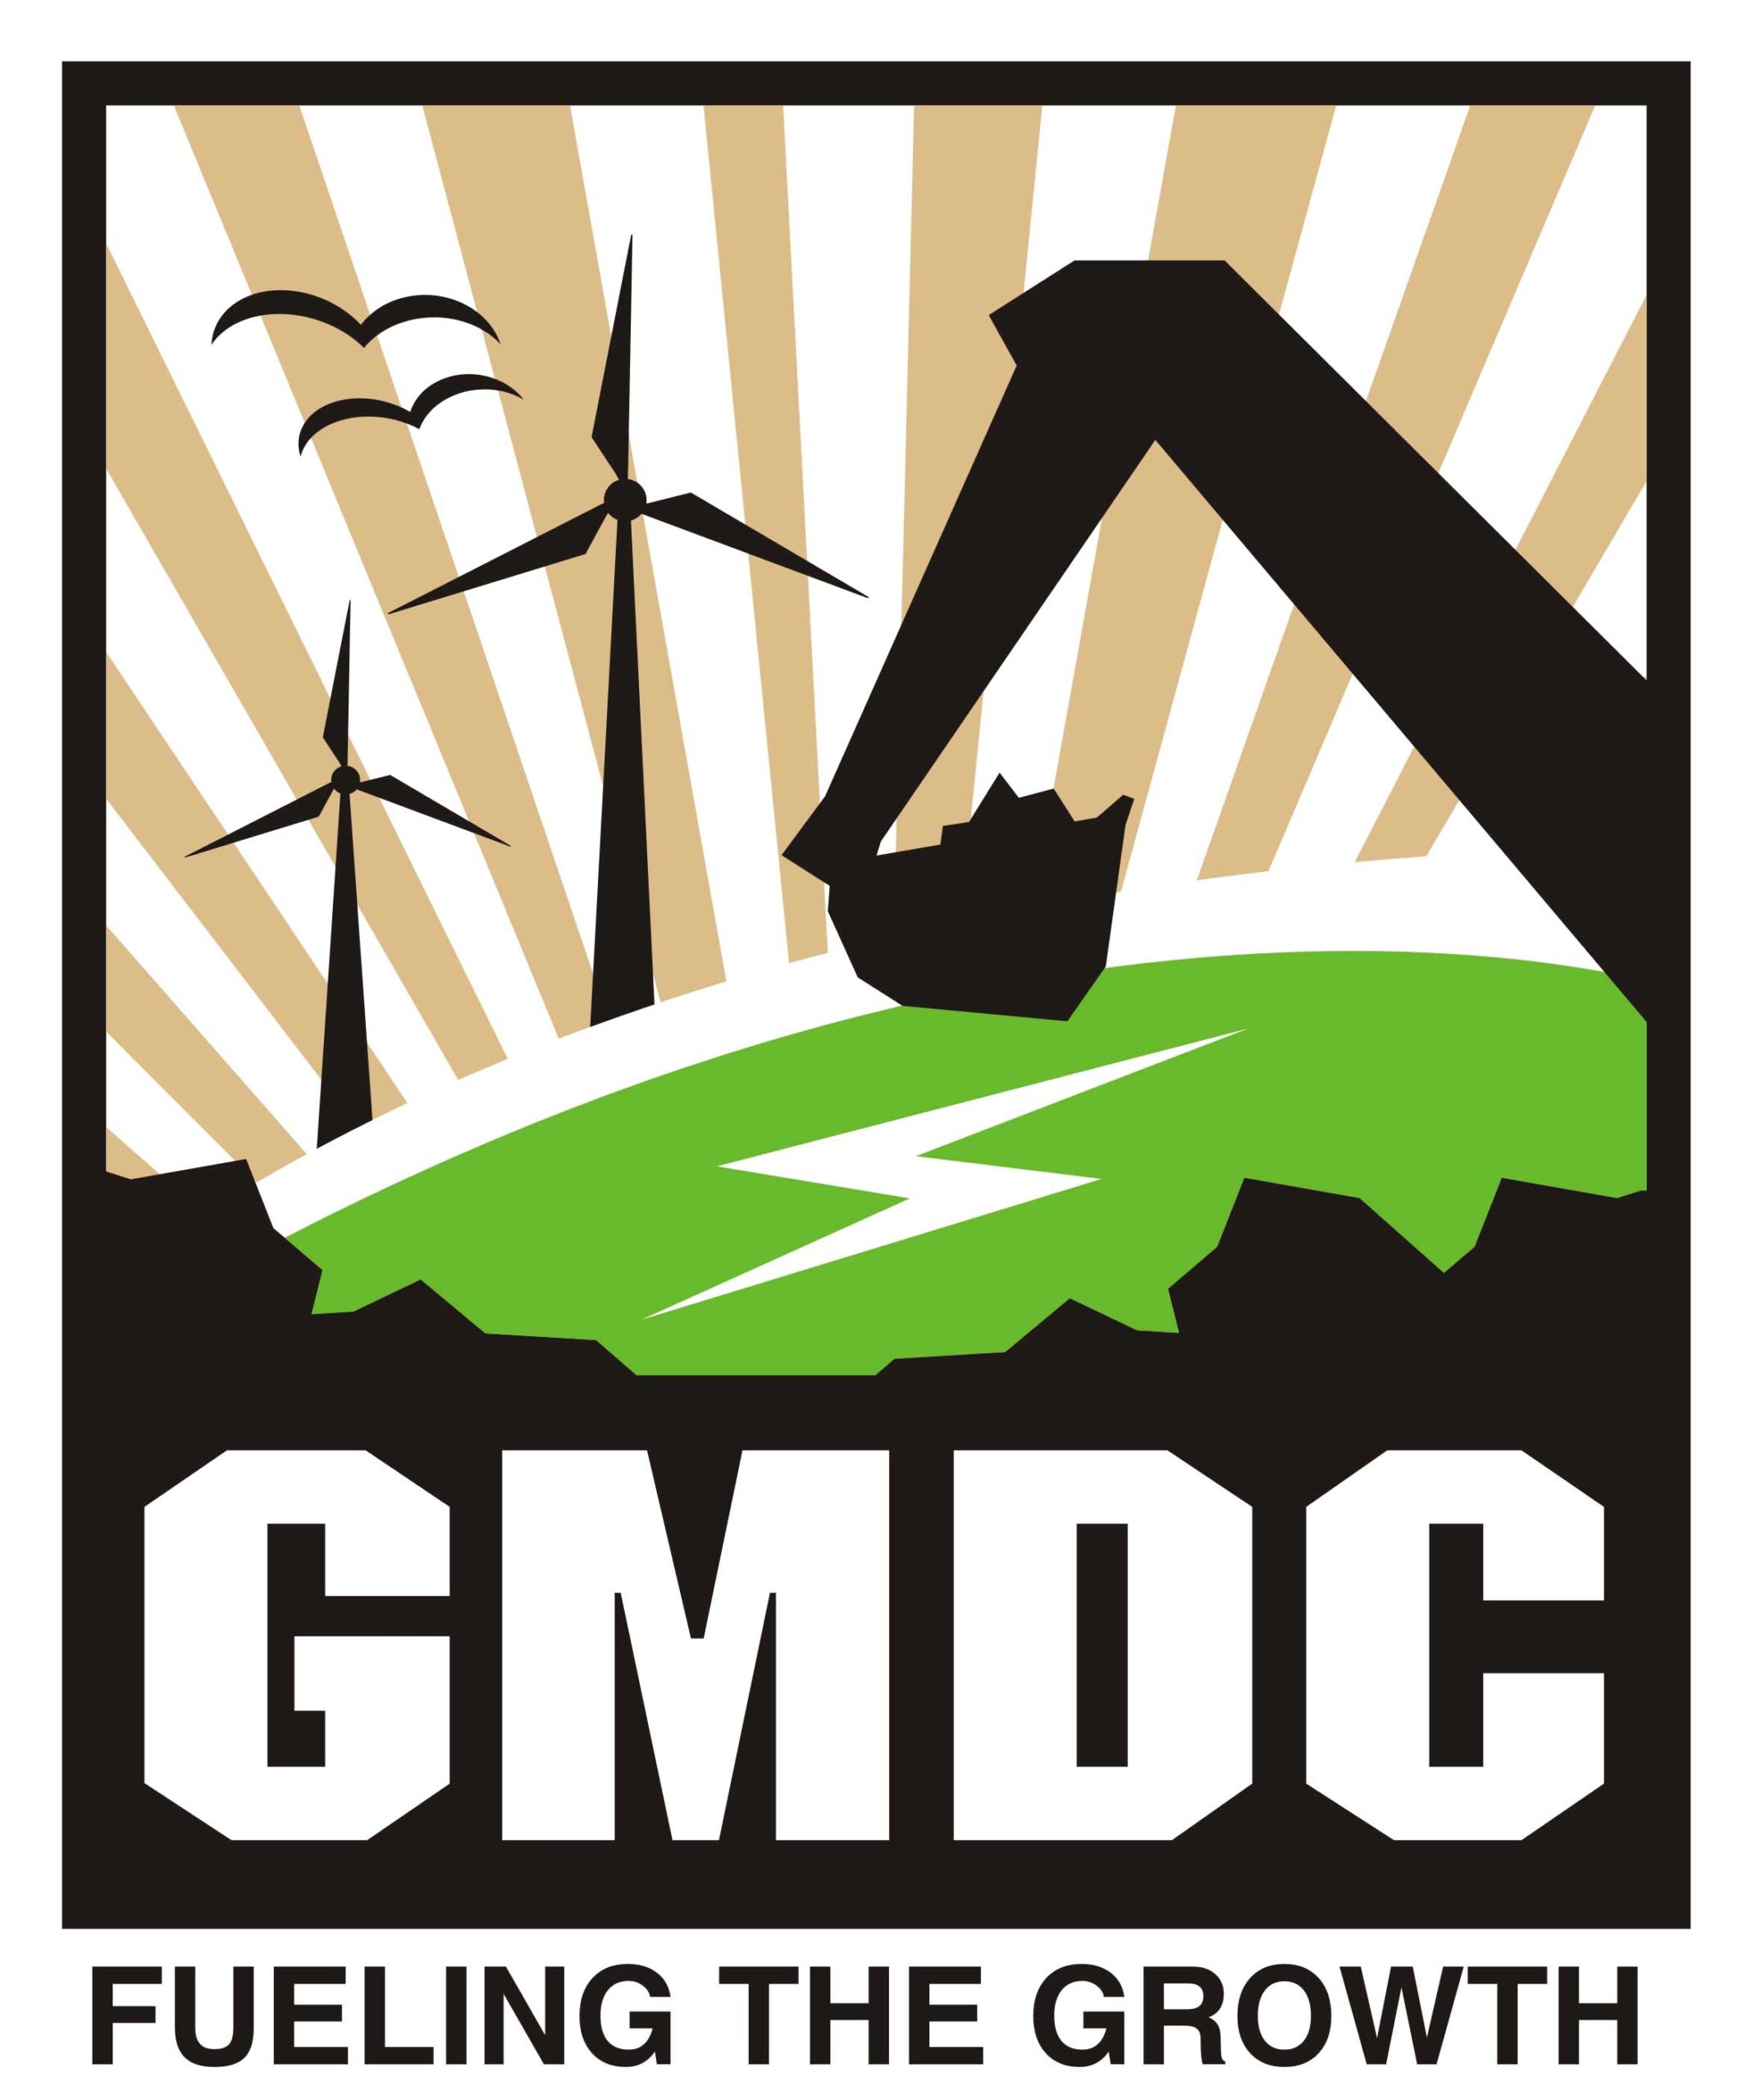 GMDC બોર્ડે રૂ. 3041 કરોડના મૂડી ખર્ચને મંજૂરી આપી